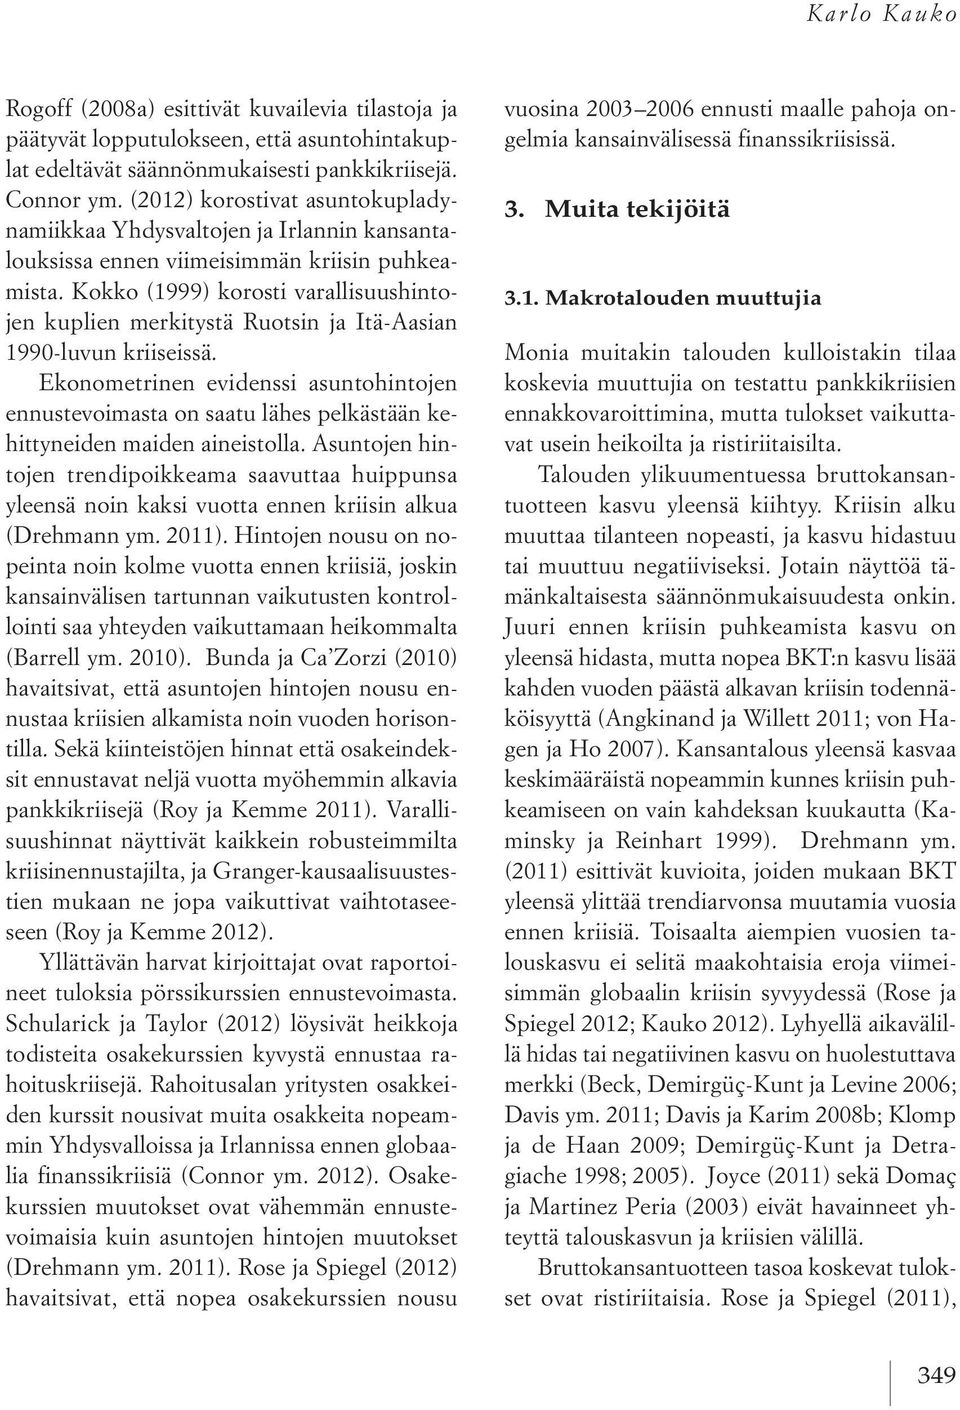 Kokko (1999) korosti varallisuushintojen kuplien merkitystä Ruotsin ja Itä-Aasian 1990-luvun kriiseissä.